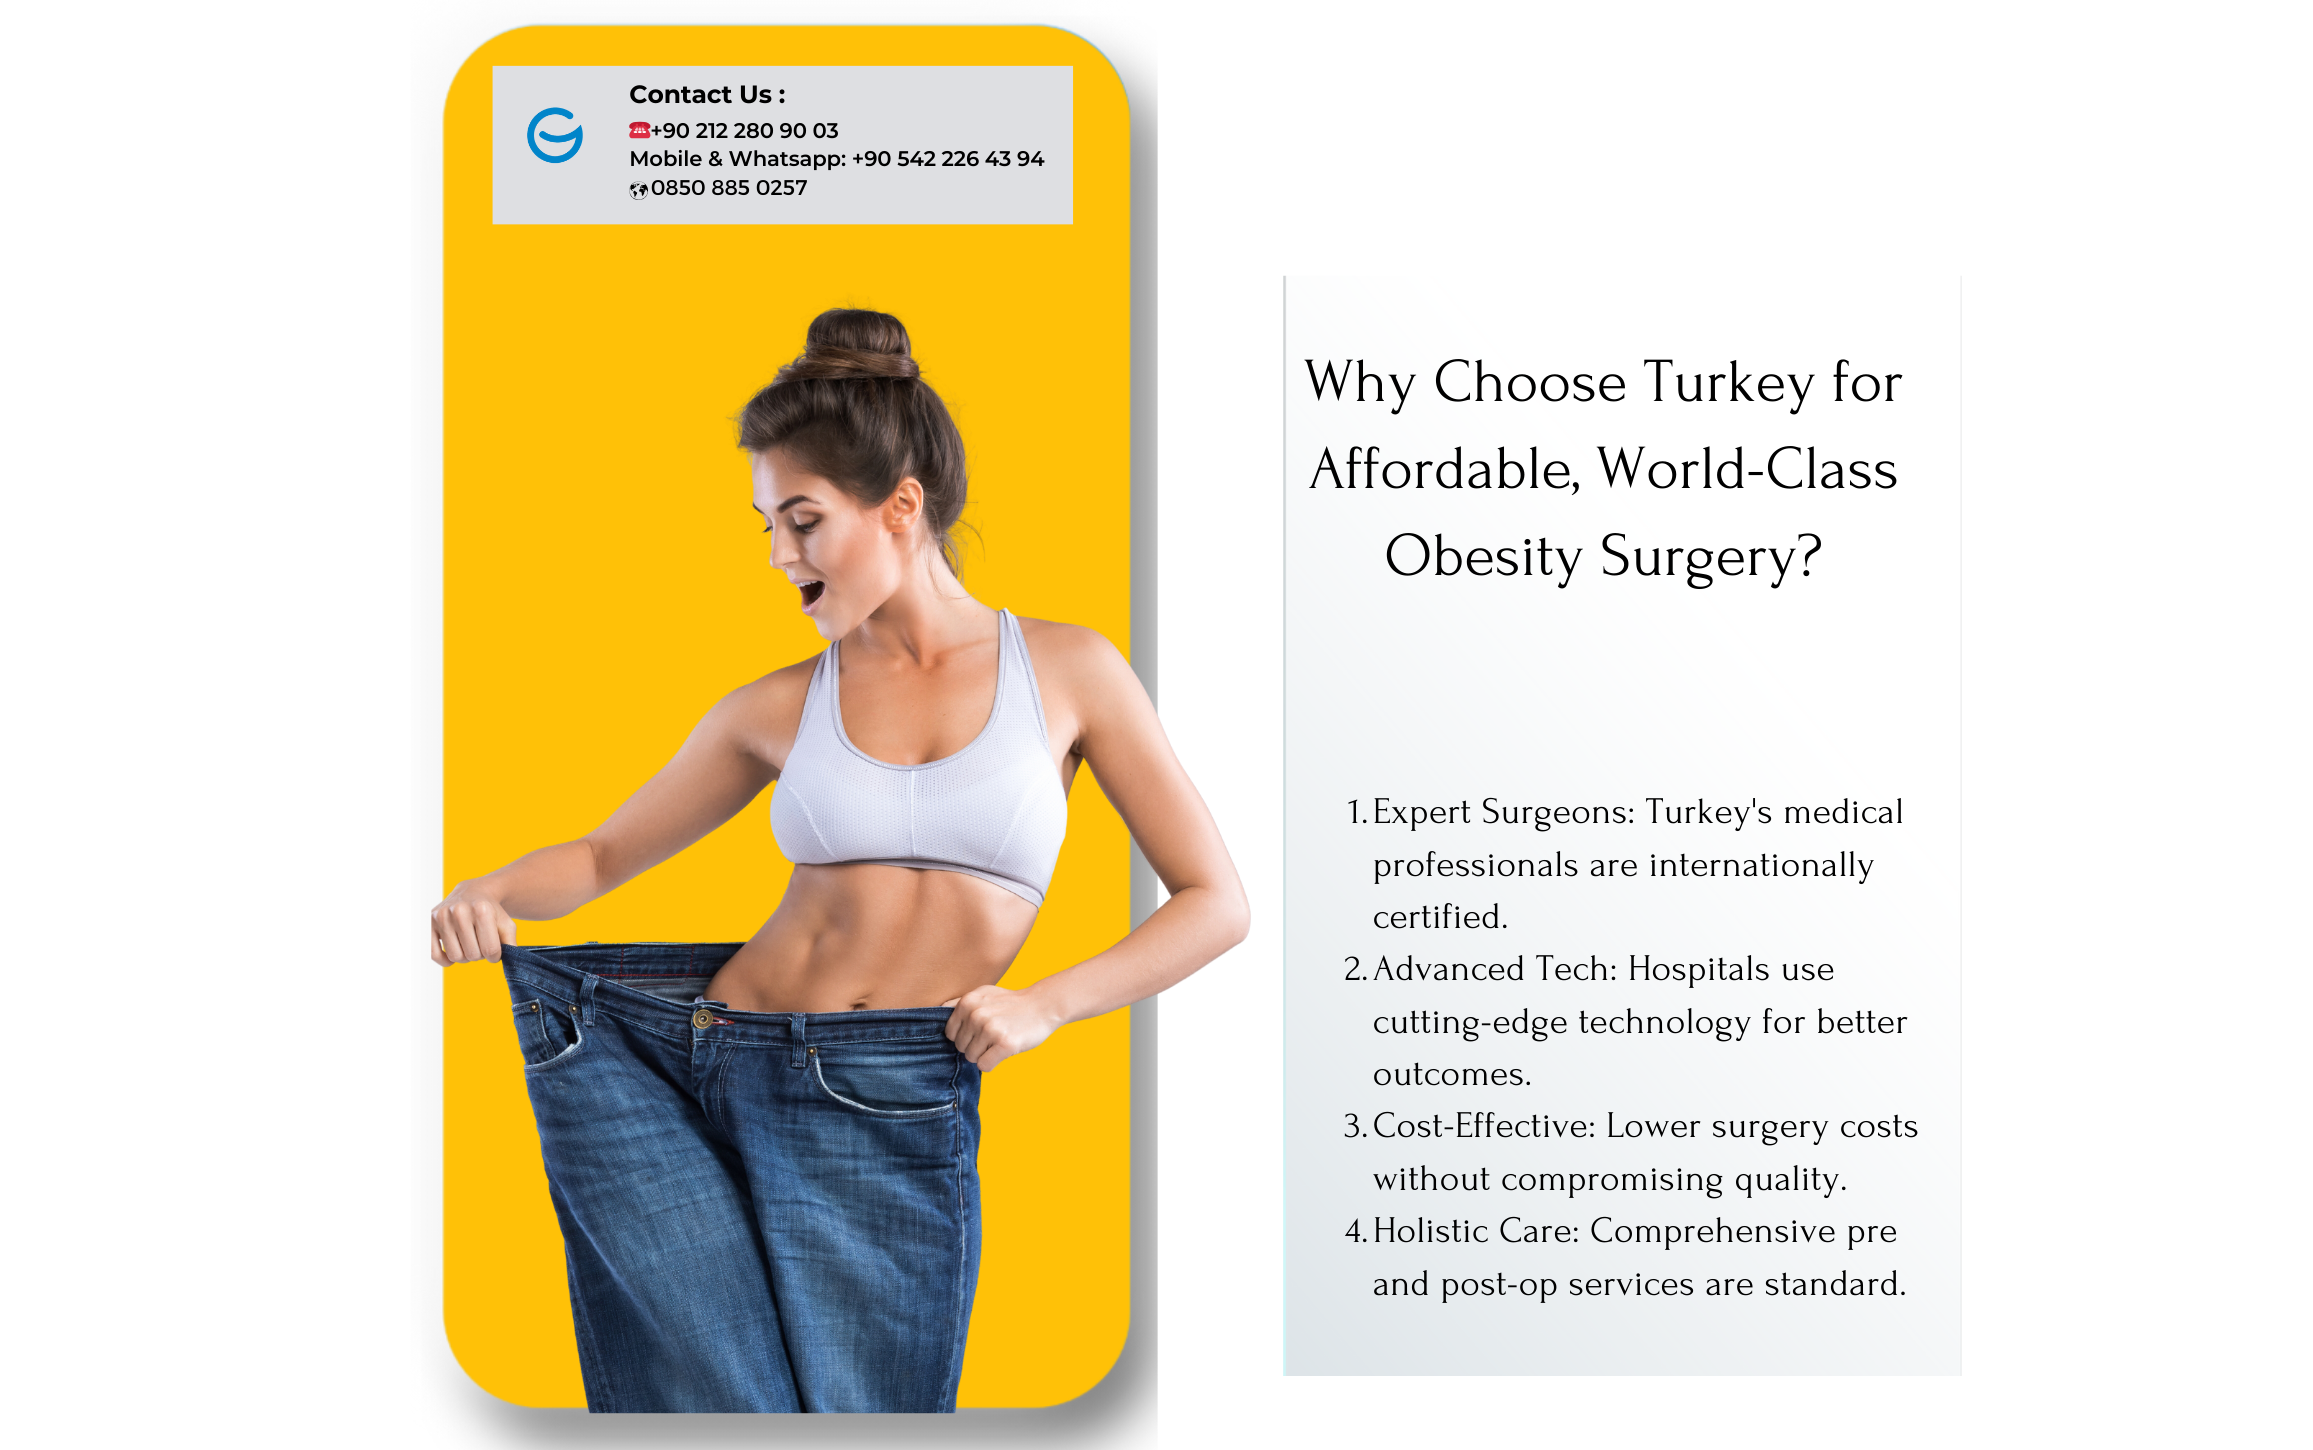 Cirugía de obesidad asequible y de clase mundial